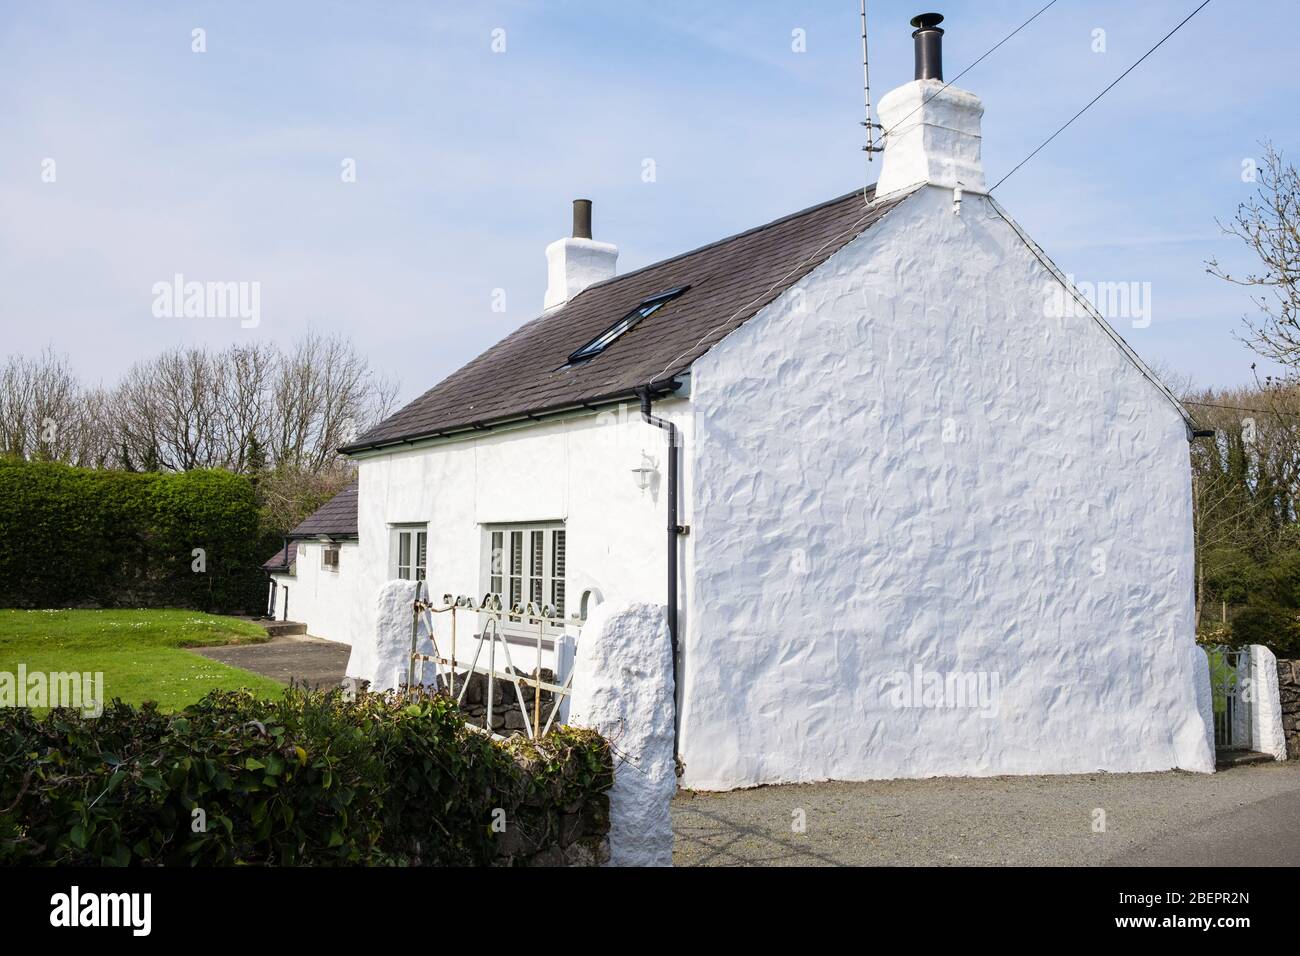 Gallois maison de campagne blanchie à la chaux avec toit traditionnel en ardoise. Brynteg, Benllech, Île d'Anglesey, Pays de Galles, Royaume-Uni, Grande-Bretagne Banque D'Images